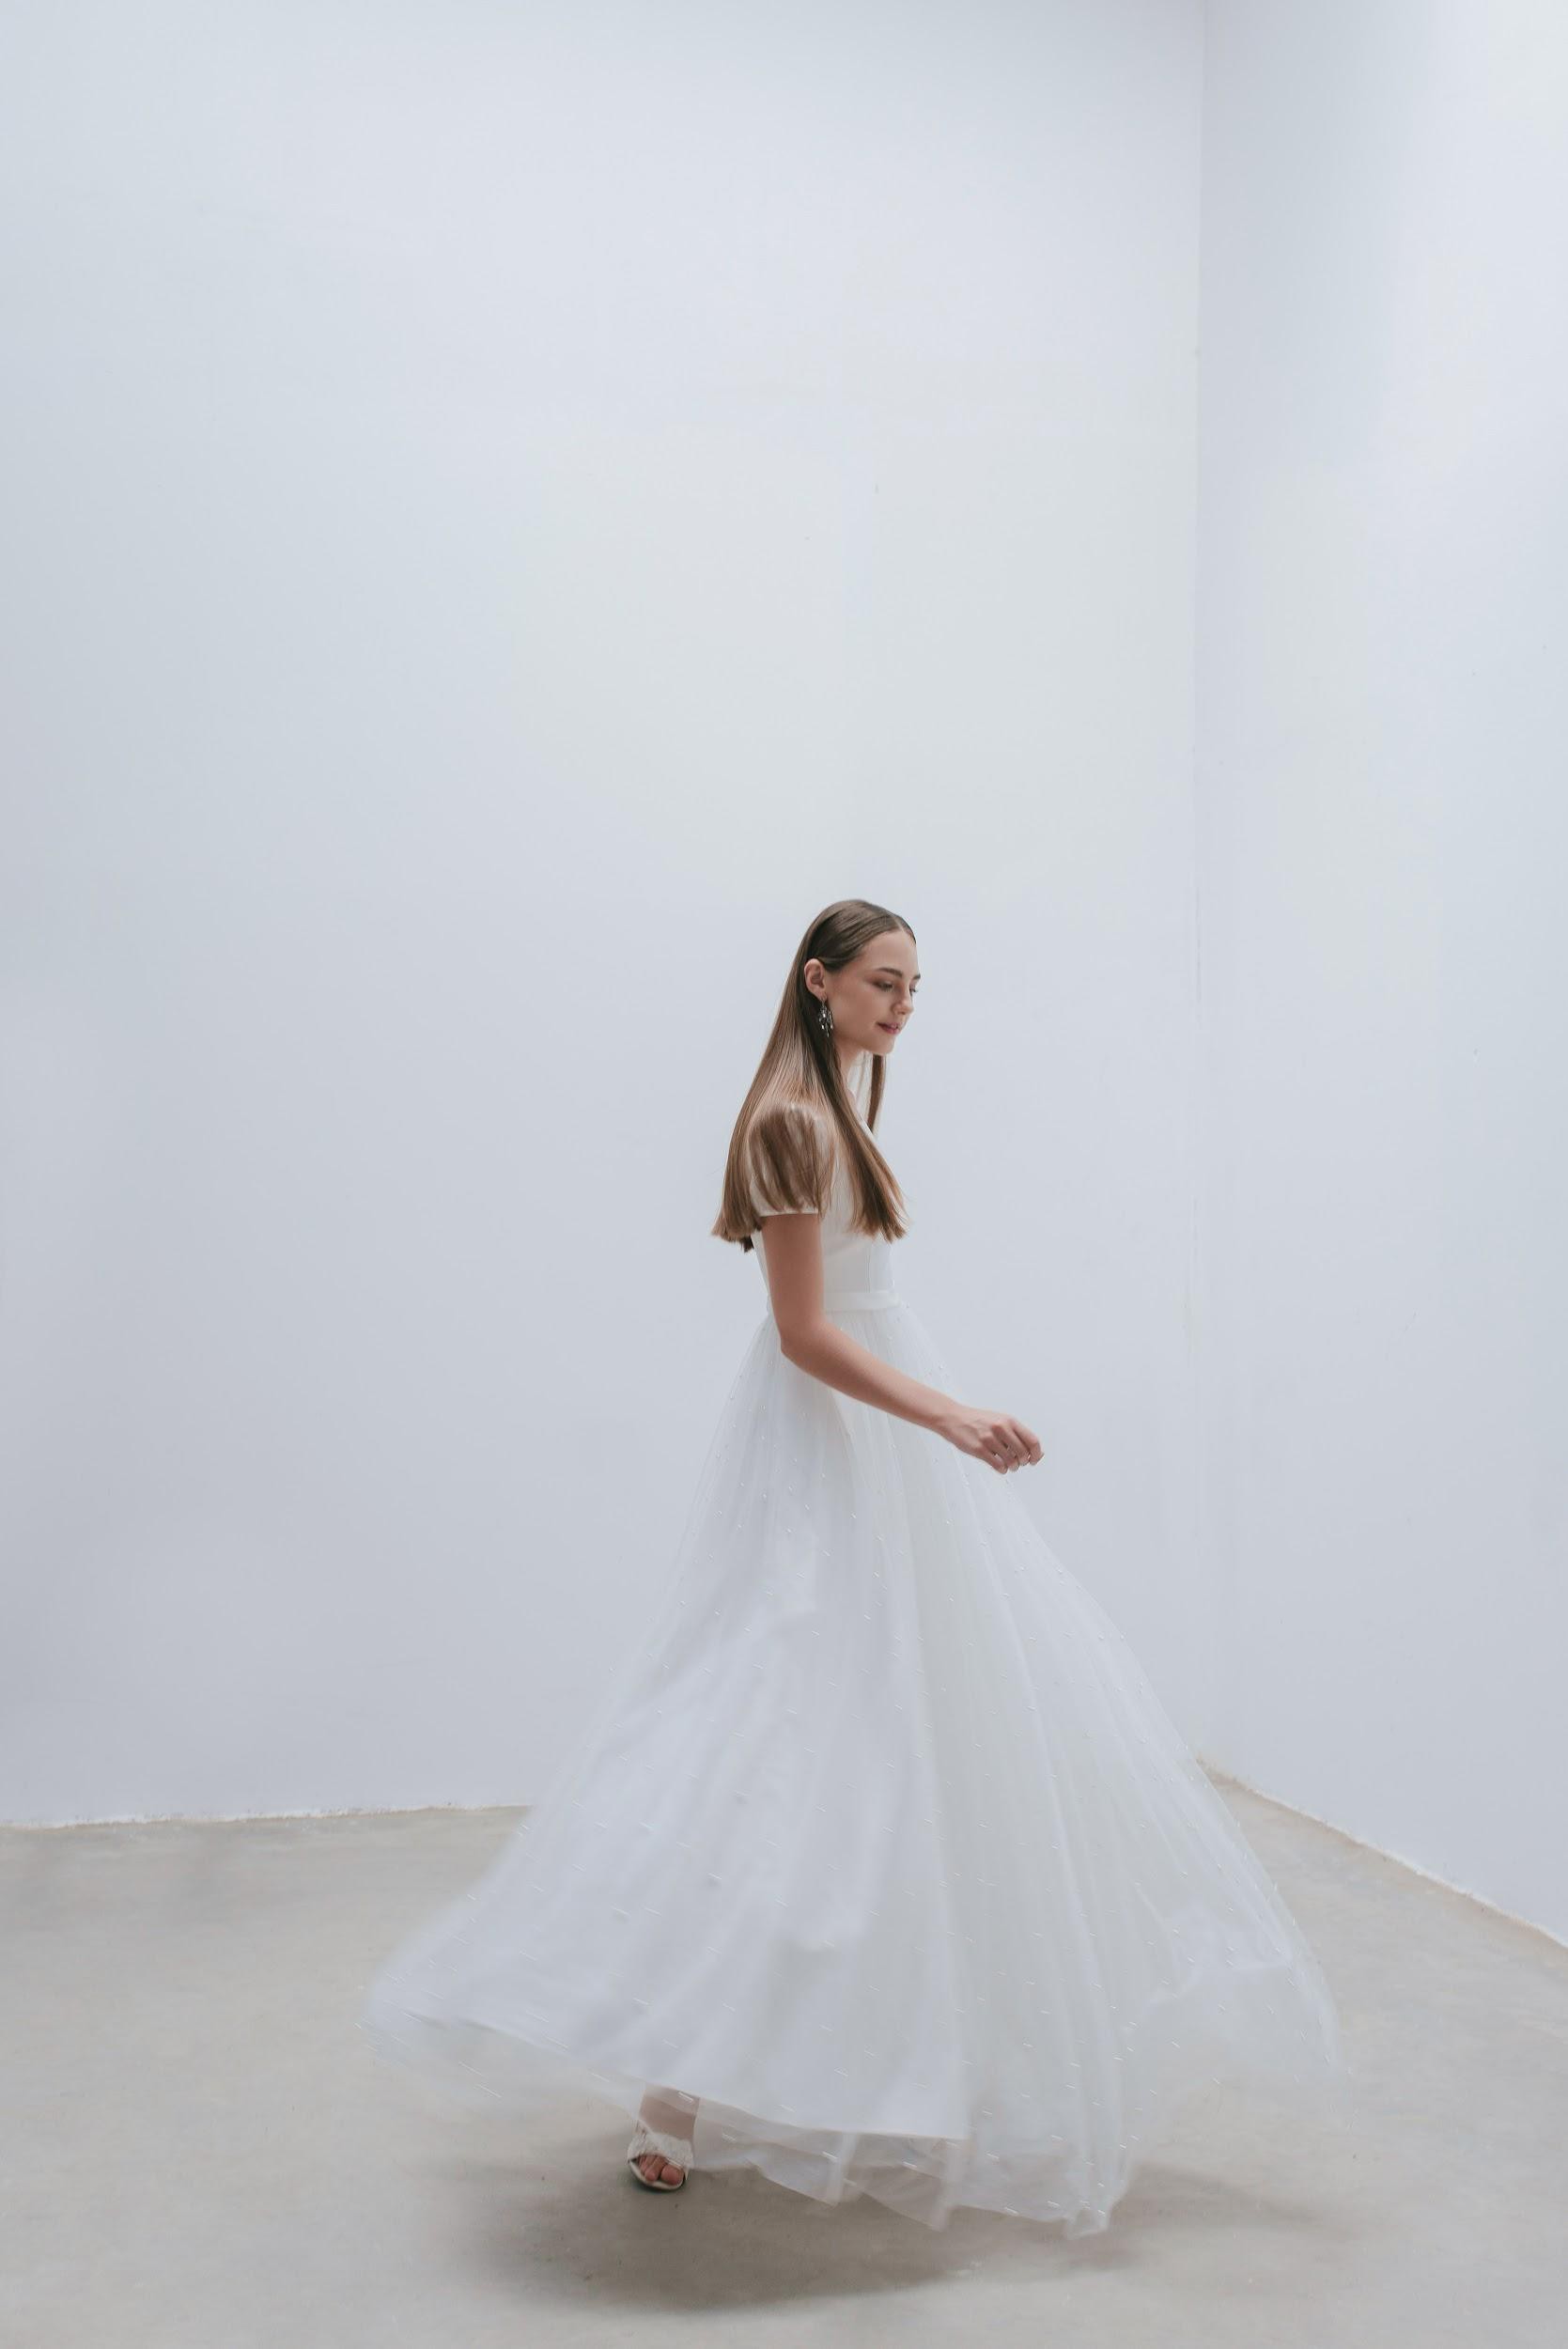 Cận cảnh 3 bộ váy cưới tinh tế trong bộ ảnh của nàng Tê Linh  KIM  COUTURETHƯƠNG HIỆU VÁY CƯỚI THIẾT KẾ NỔI TIẾNG TẠI VIỆT NAM